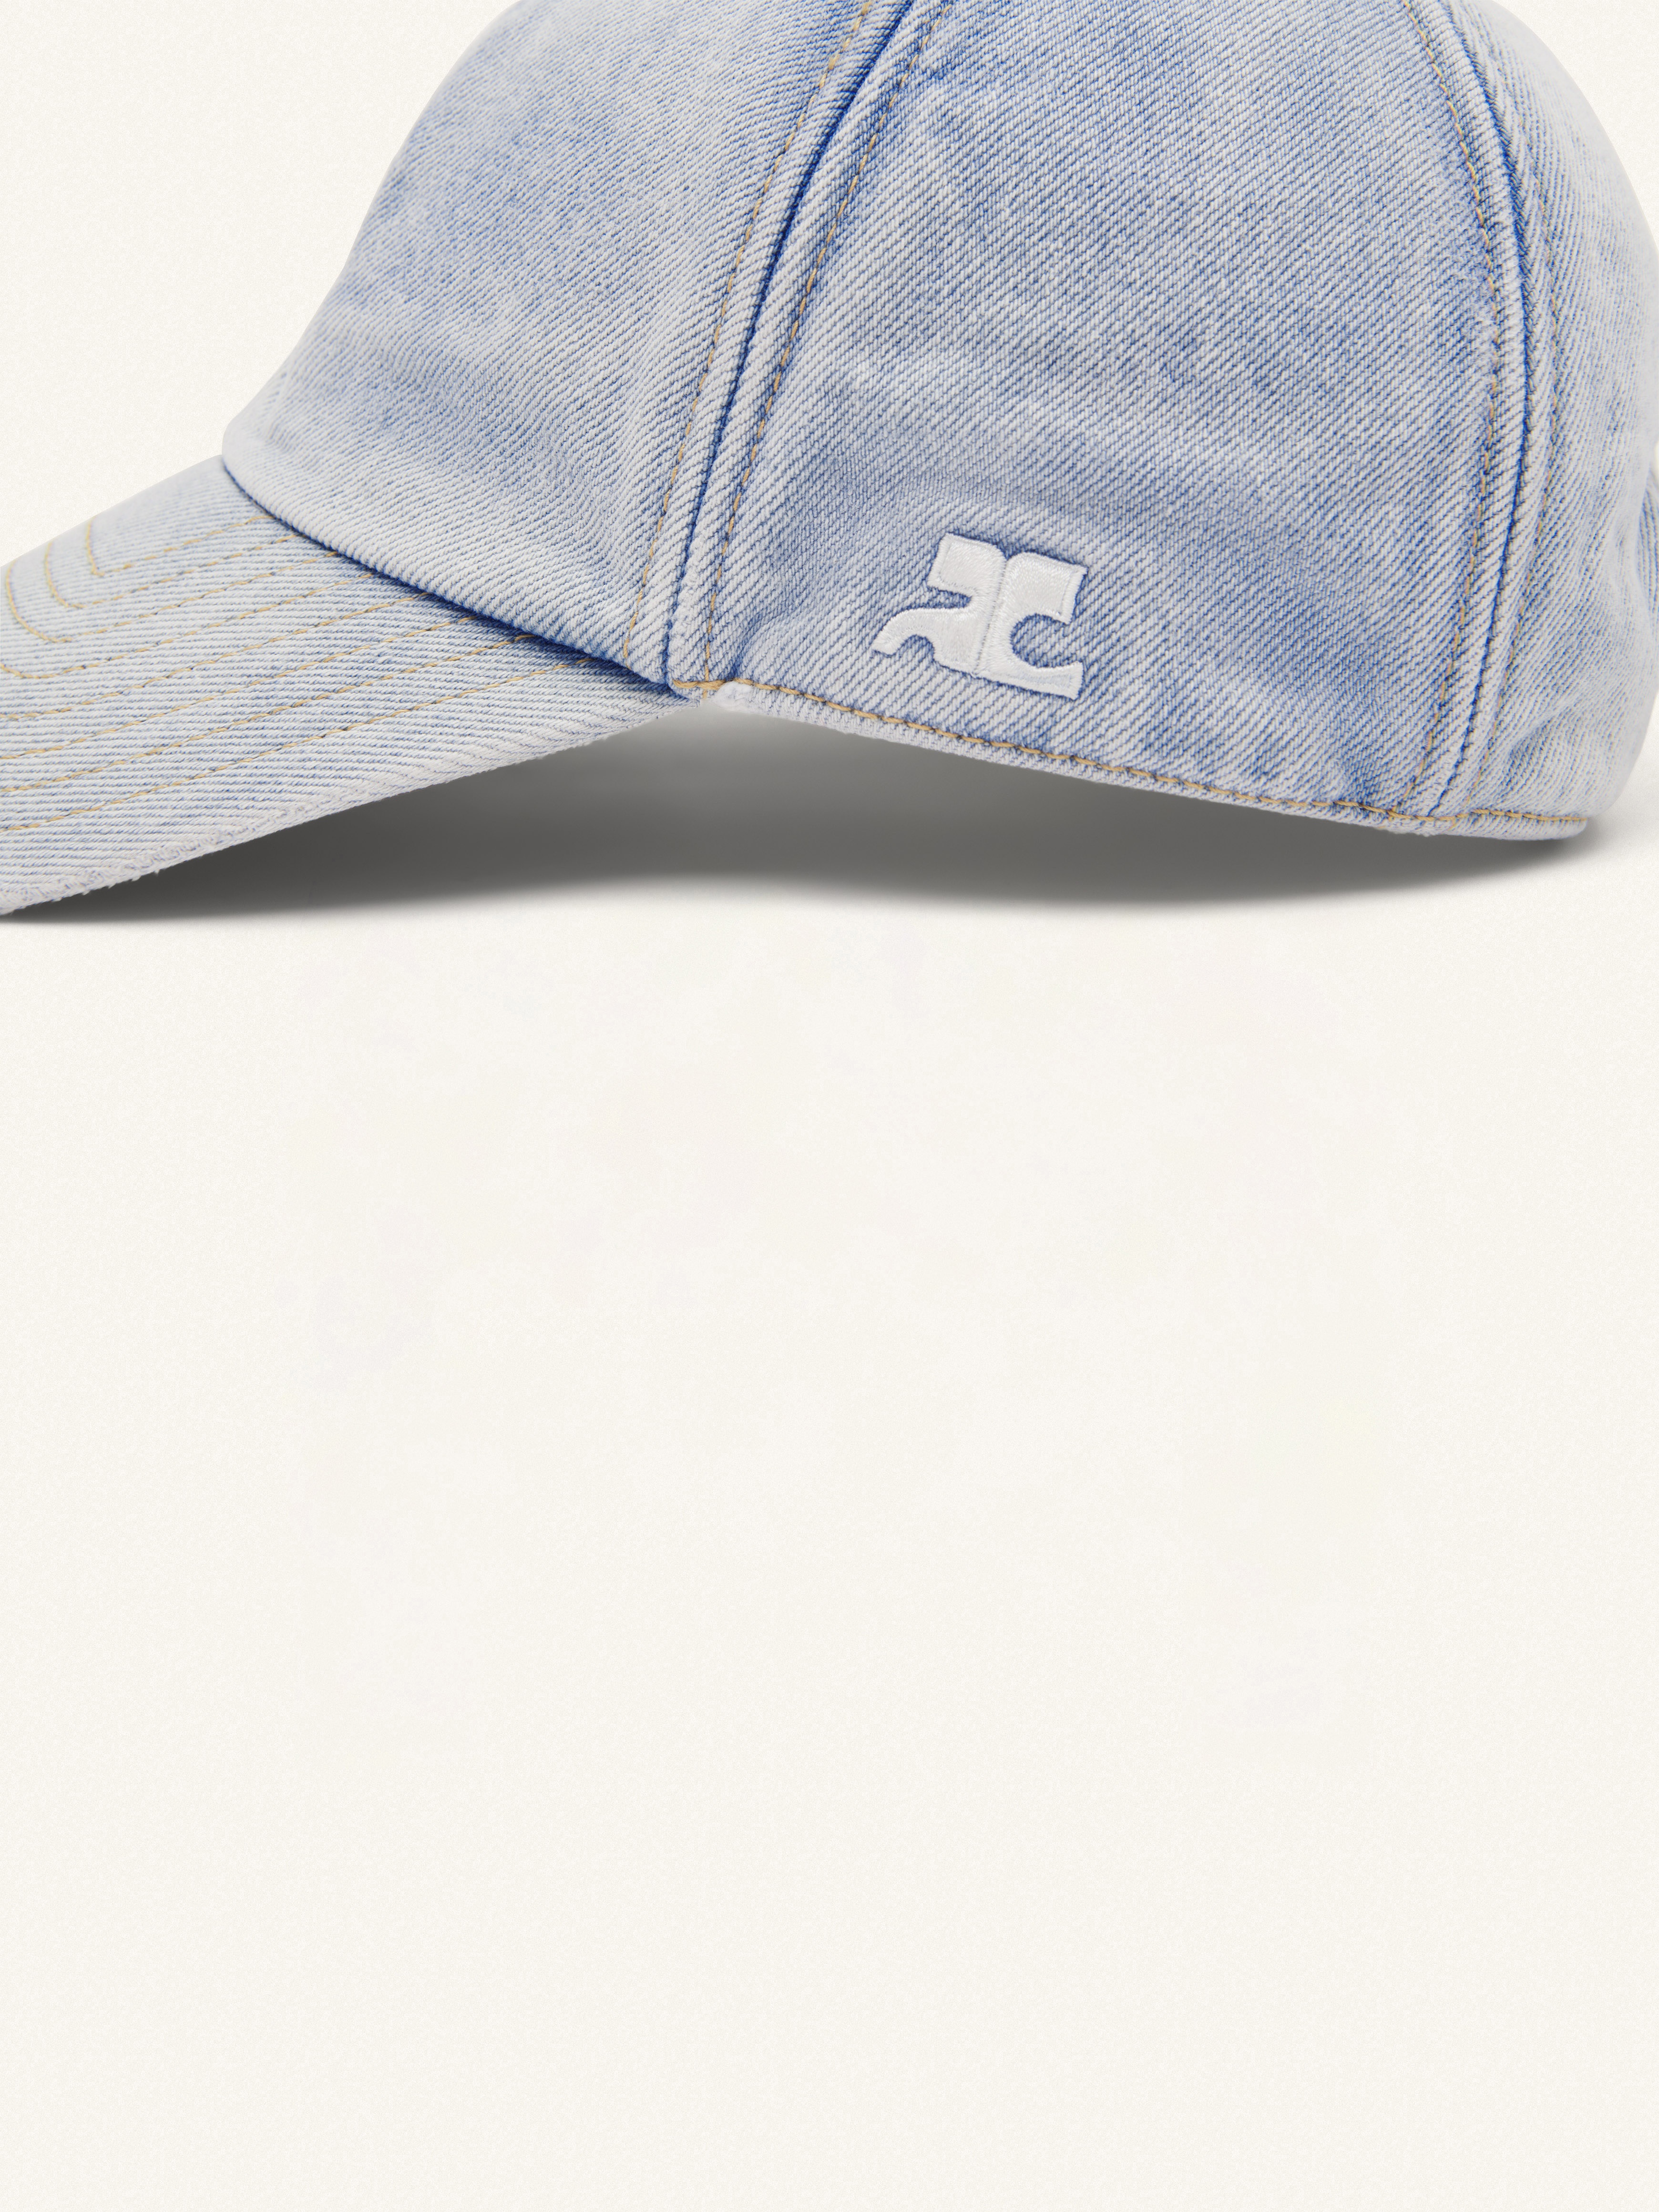 SIGNATURE BLUE DENIM CAP - 4